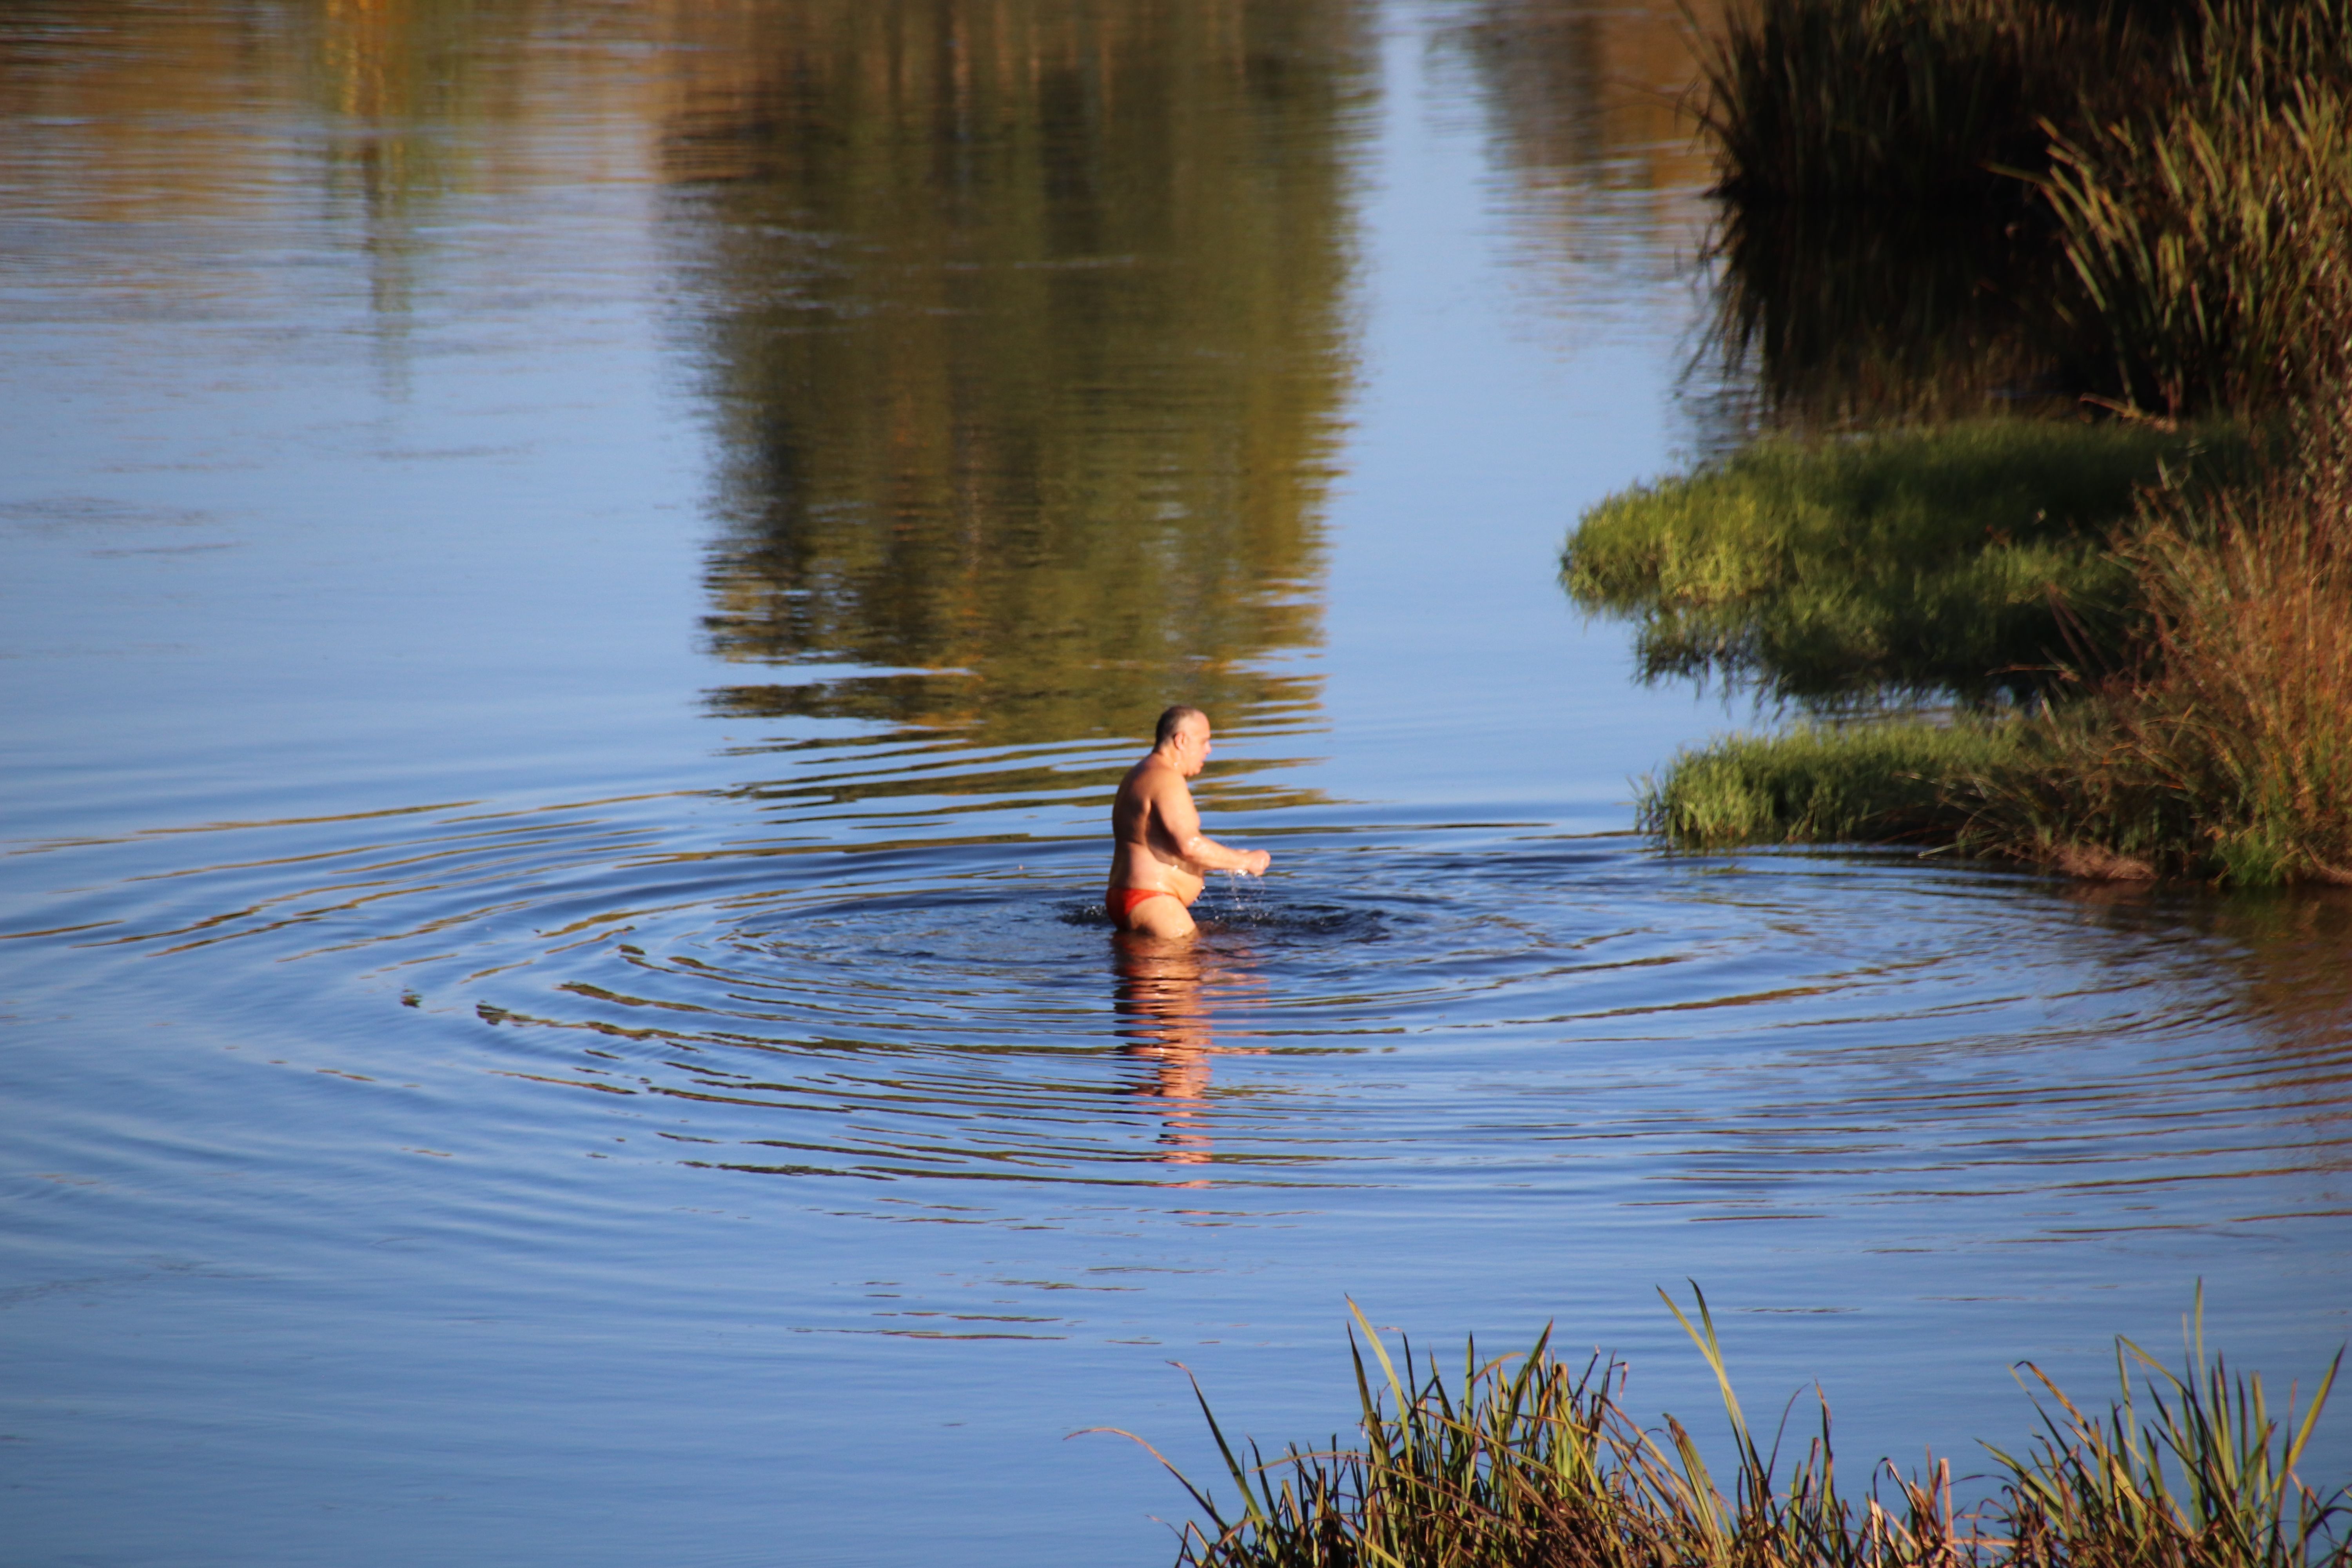 Señor bañándose en el río en pleno otoño